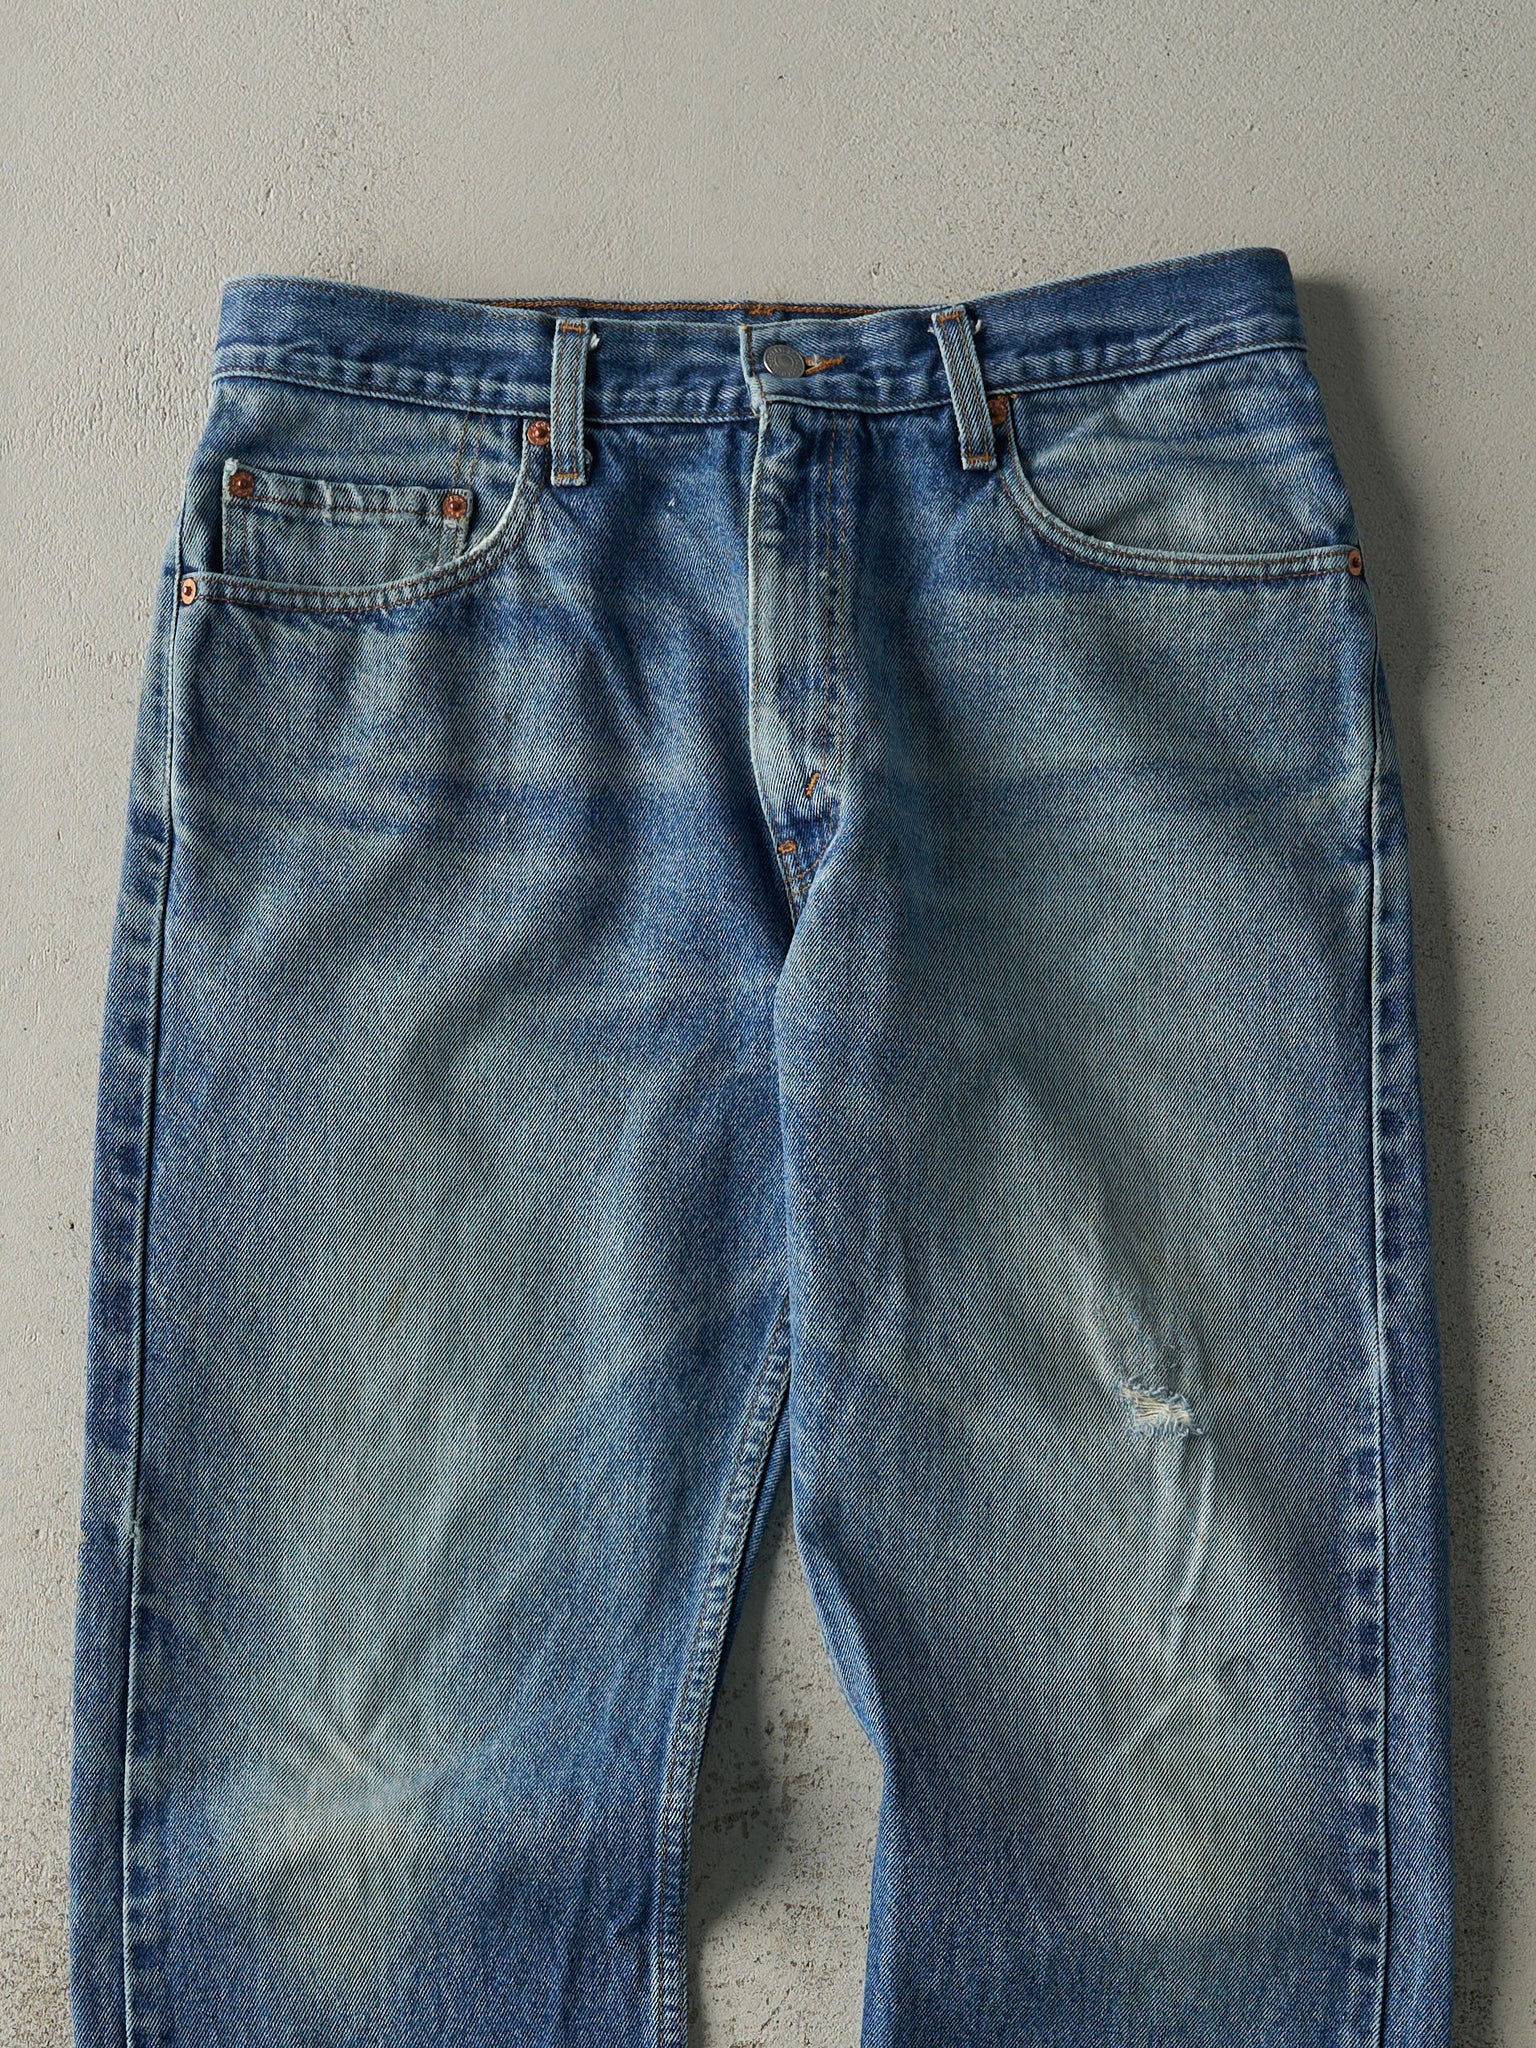 Vintage 80s Mid Wash Levi's 505 Jeans (33x26.5)